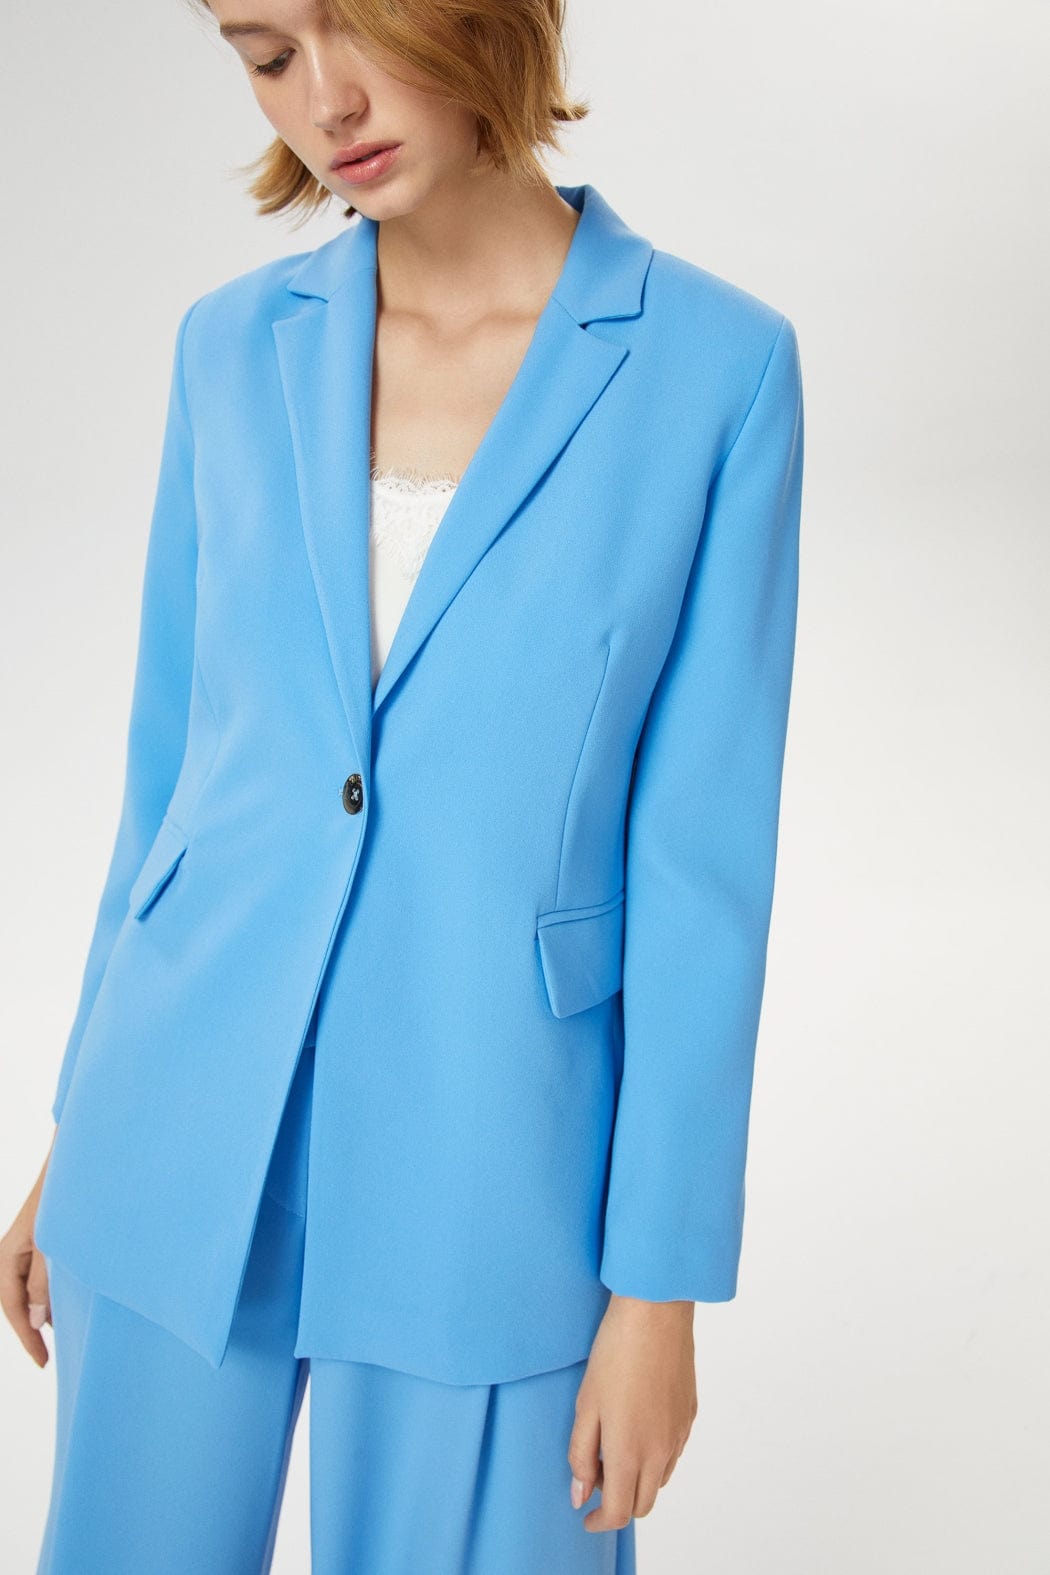 Women's Light Blue Single Breasted Longline Blazer